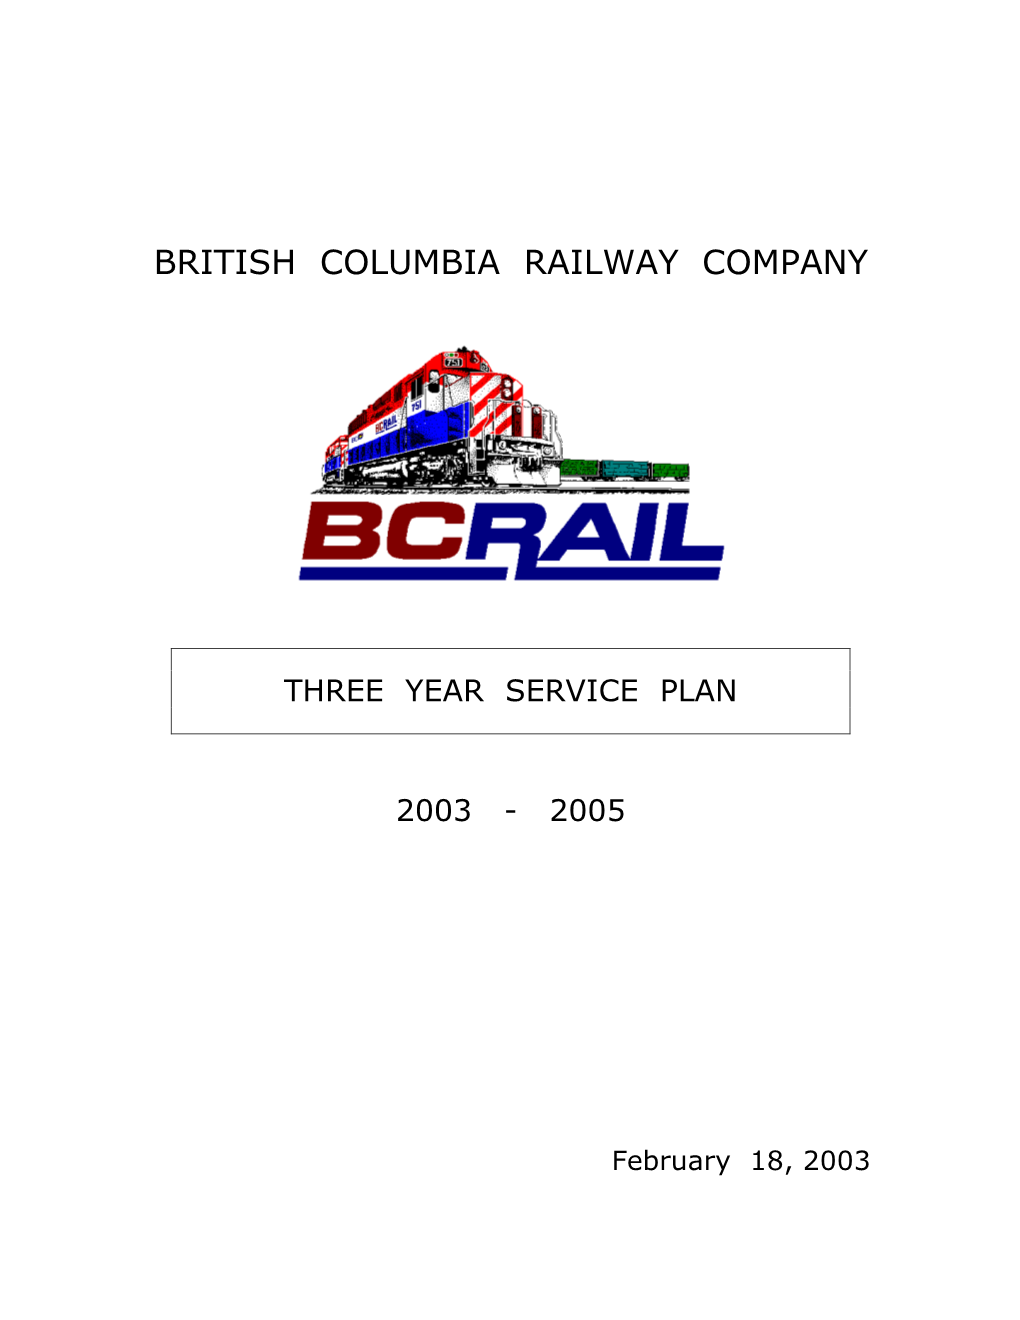 British Columbia Railway Company